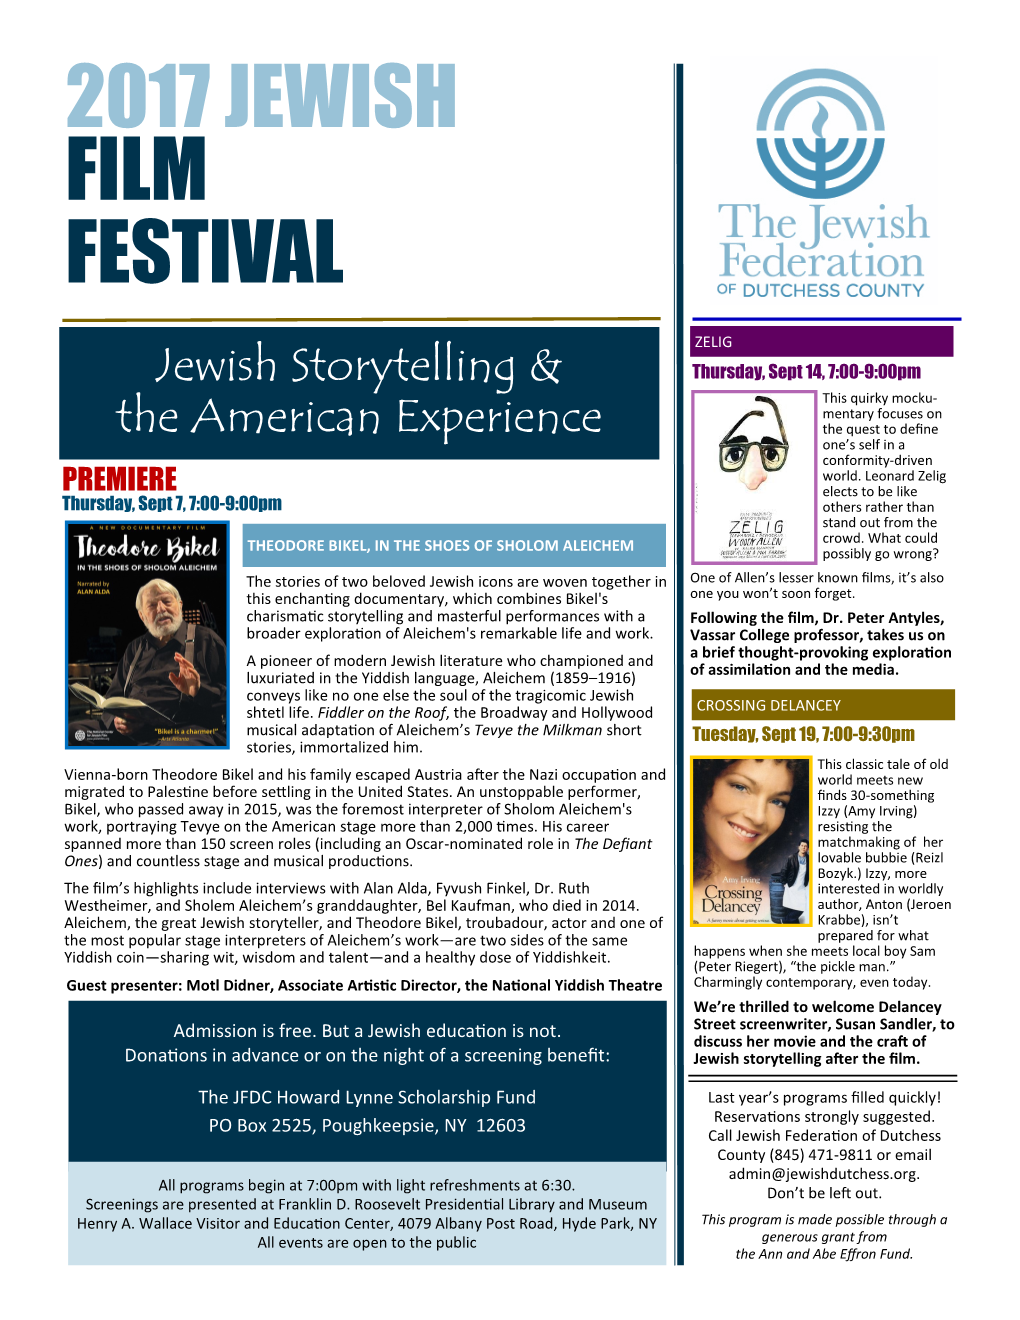 2017 Jewish Film Festival